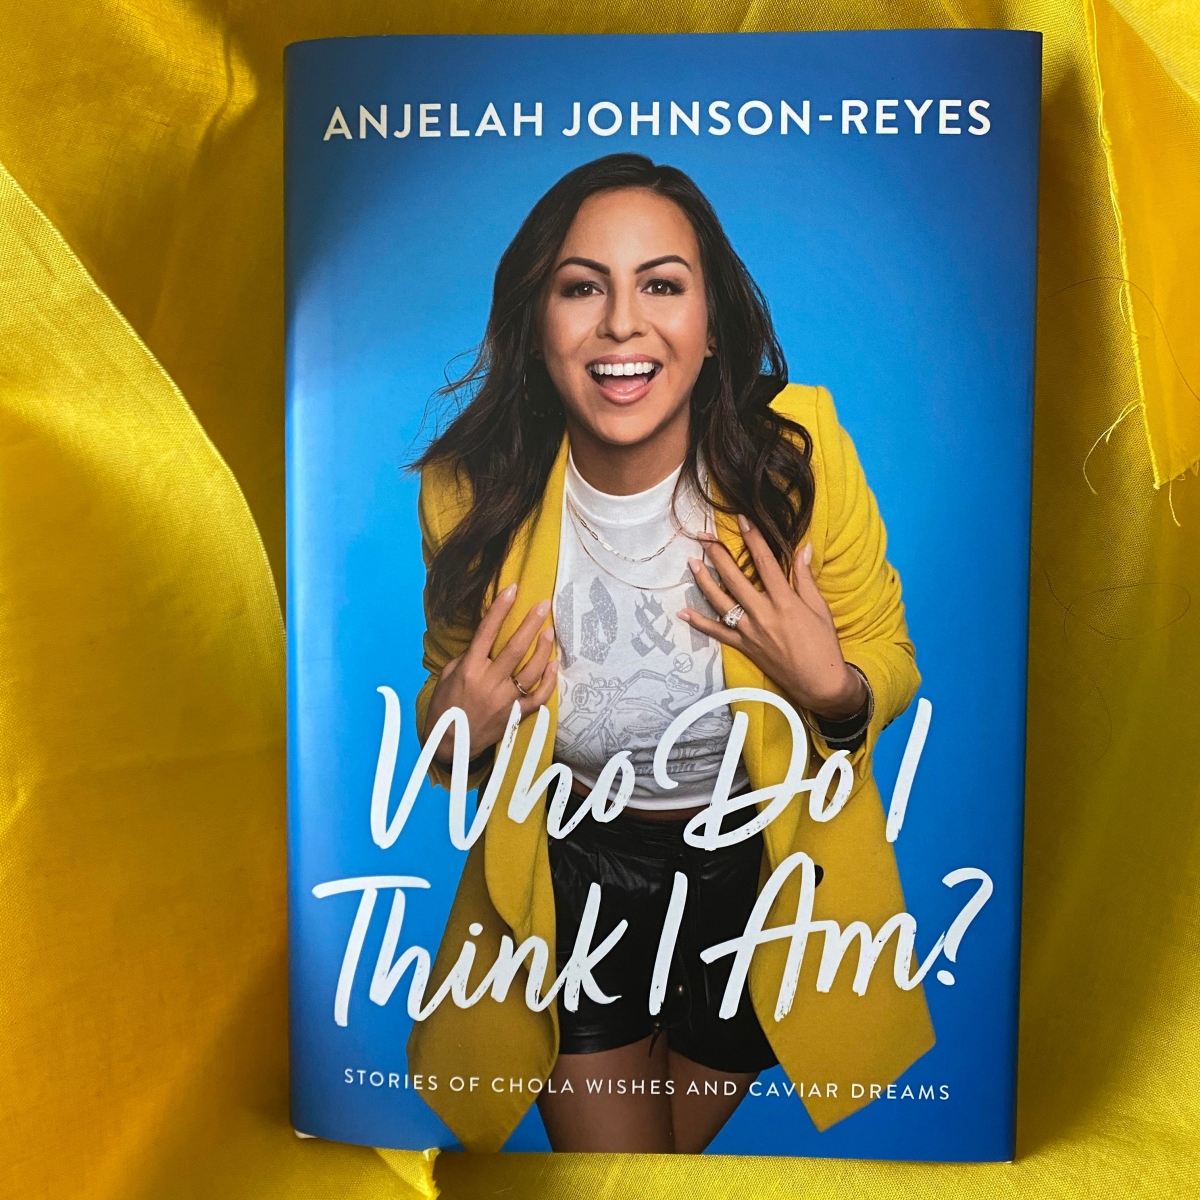 Anjelah Johnson-Reyes asks “Who Do I Think I Am?”